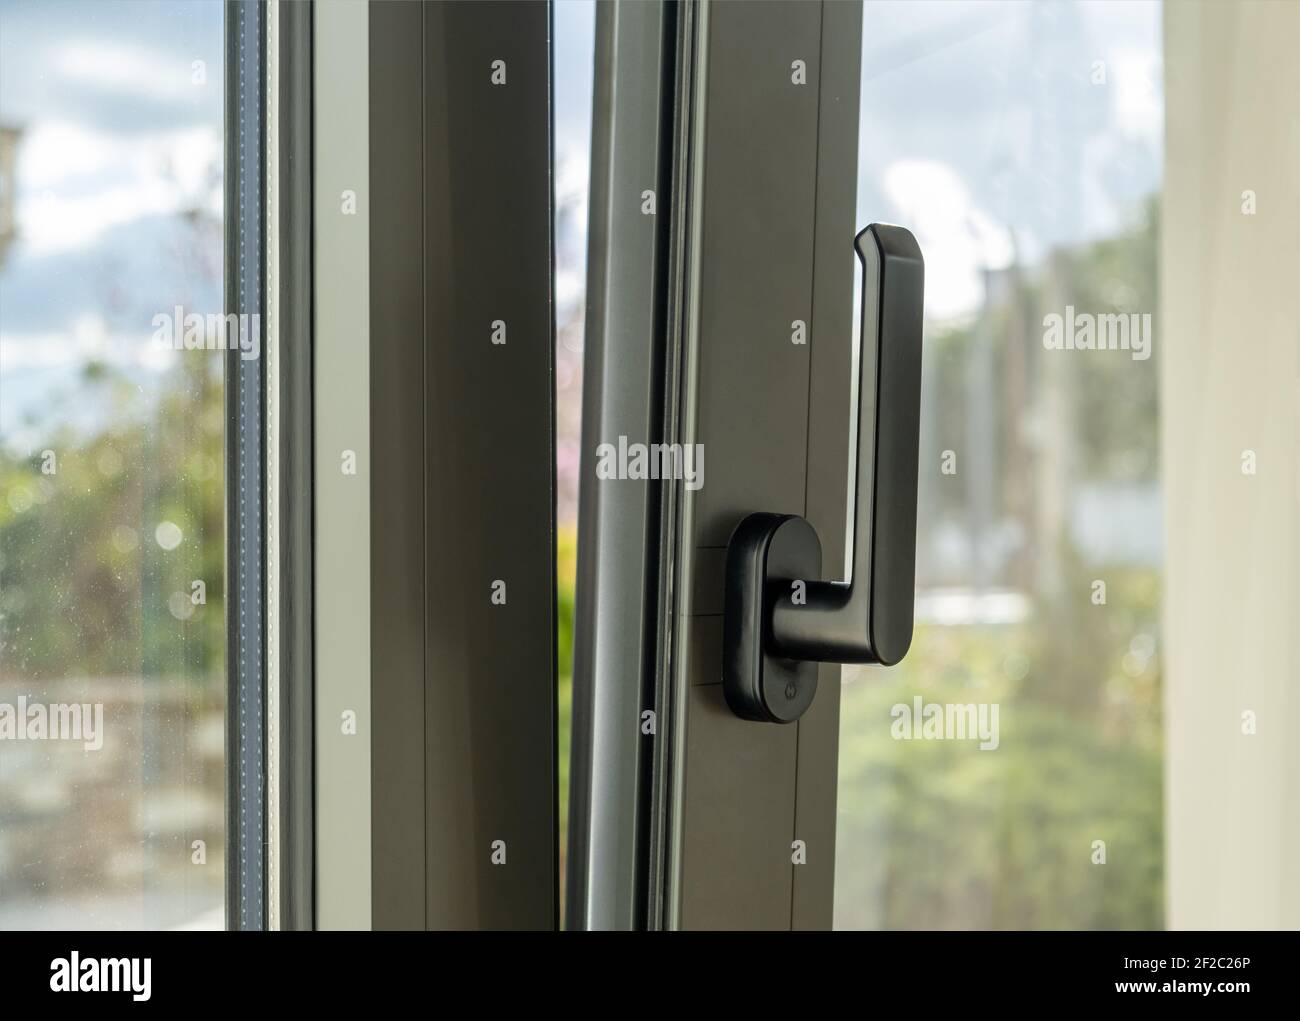 Metall- oder PVC-Fenster vertikal öffnen Nahaufnahme. Kippen und drehen graue Farbe Aluminium-Fenster, frische Luft für zu Hause. Energieeffizientes Sicherheitsprofil aus Metall Stockfoto